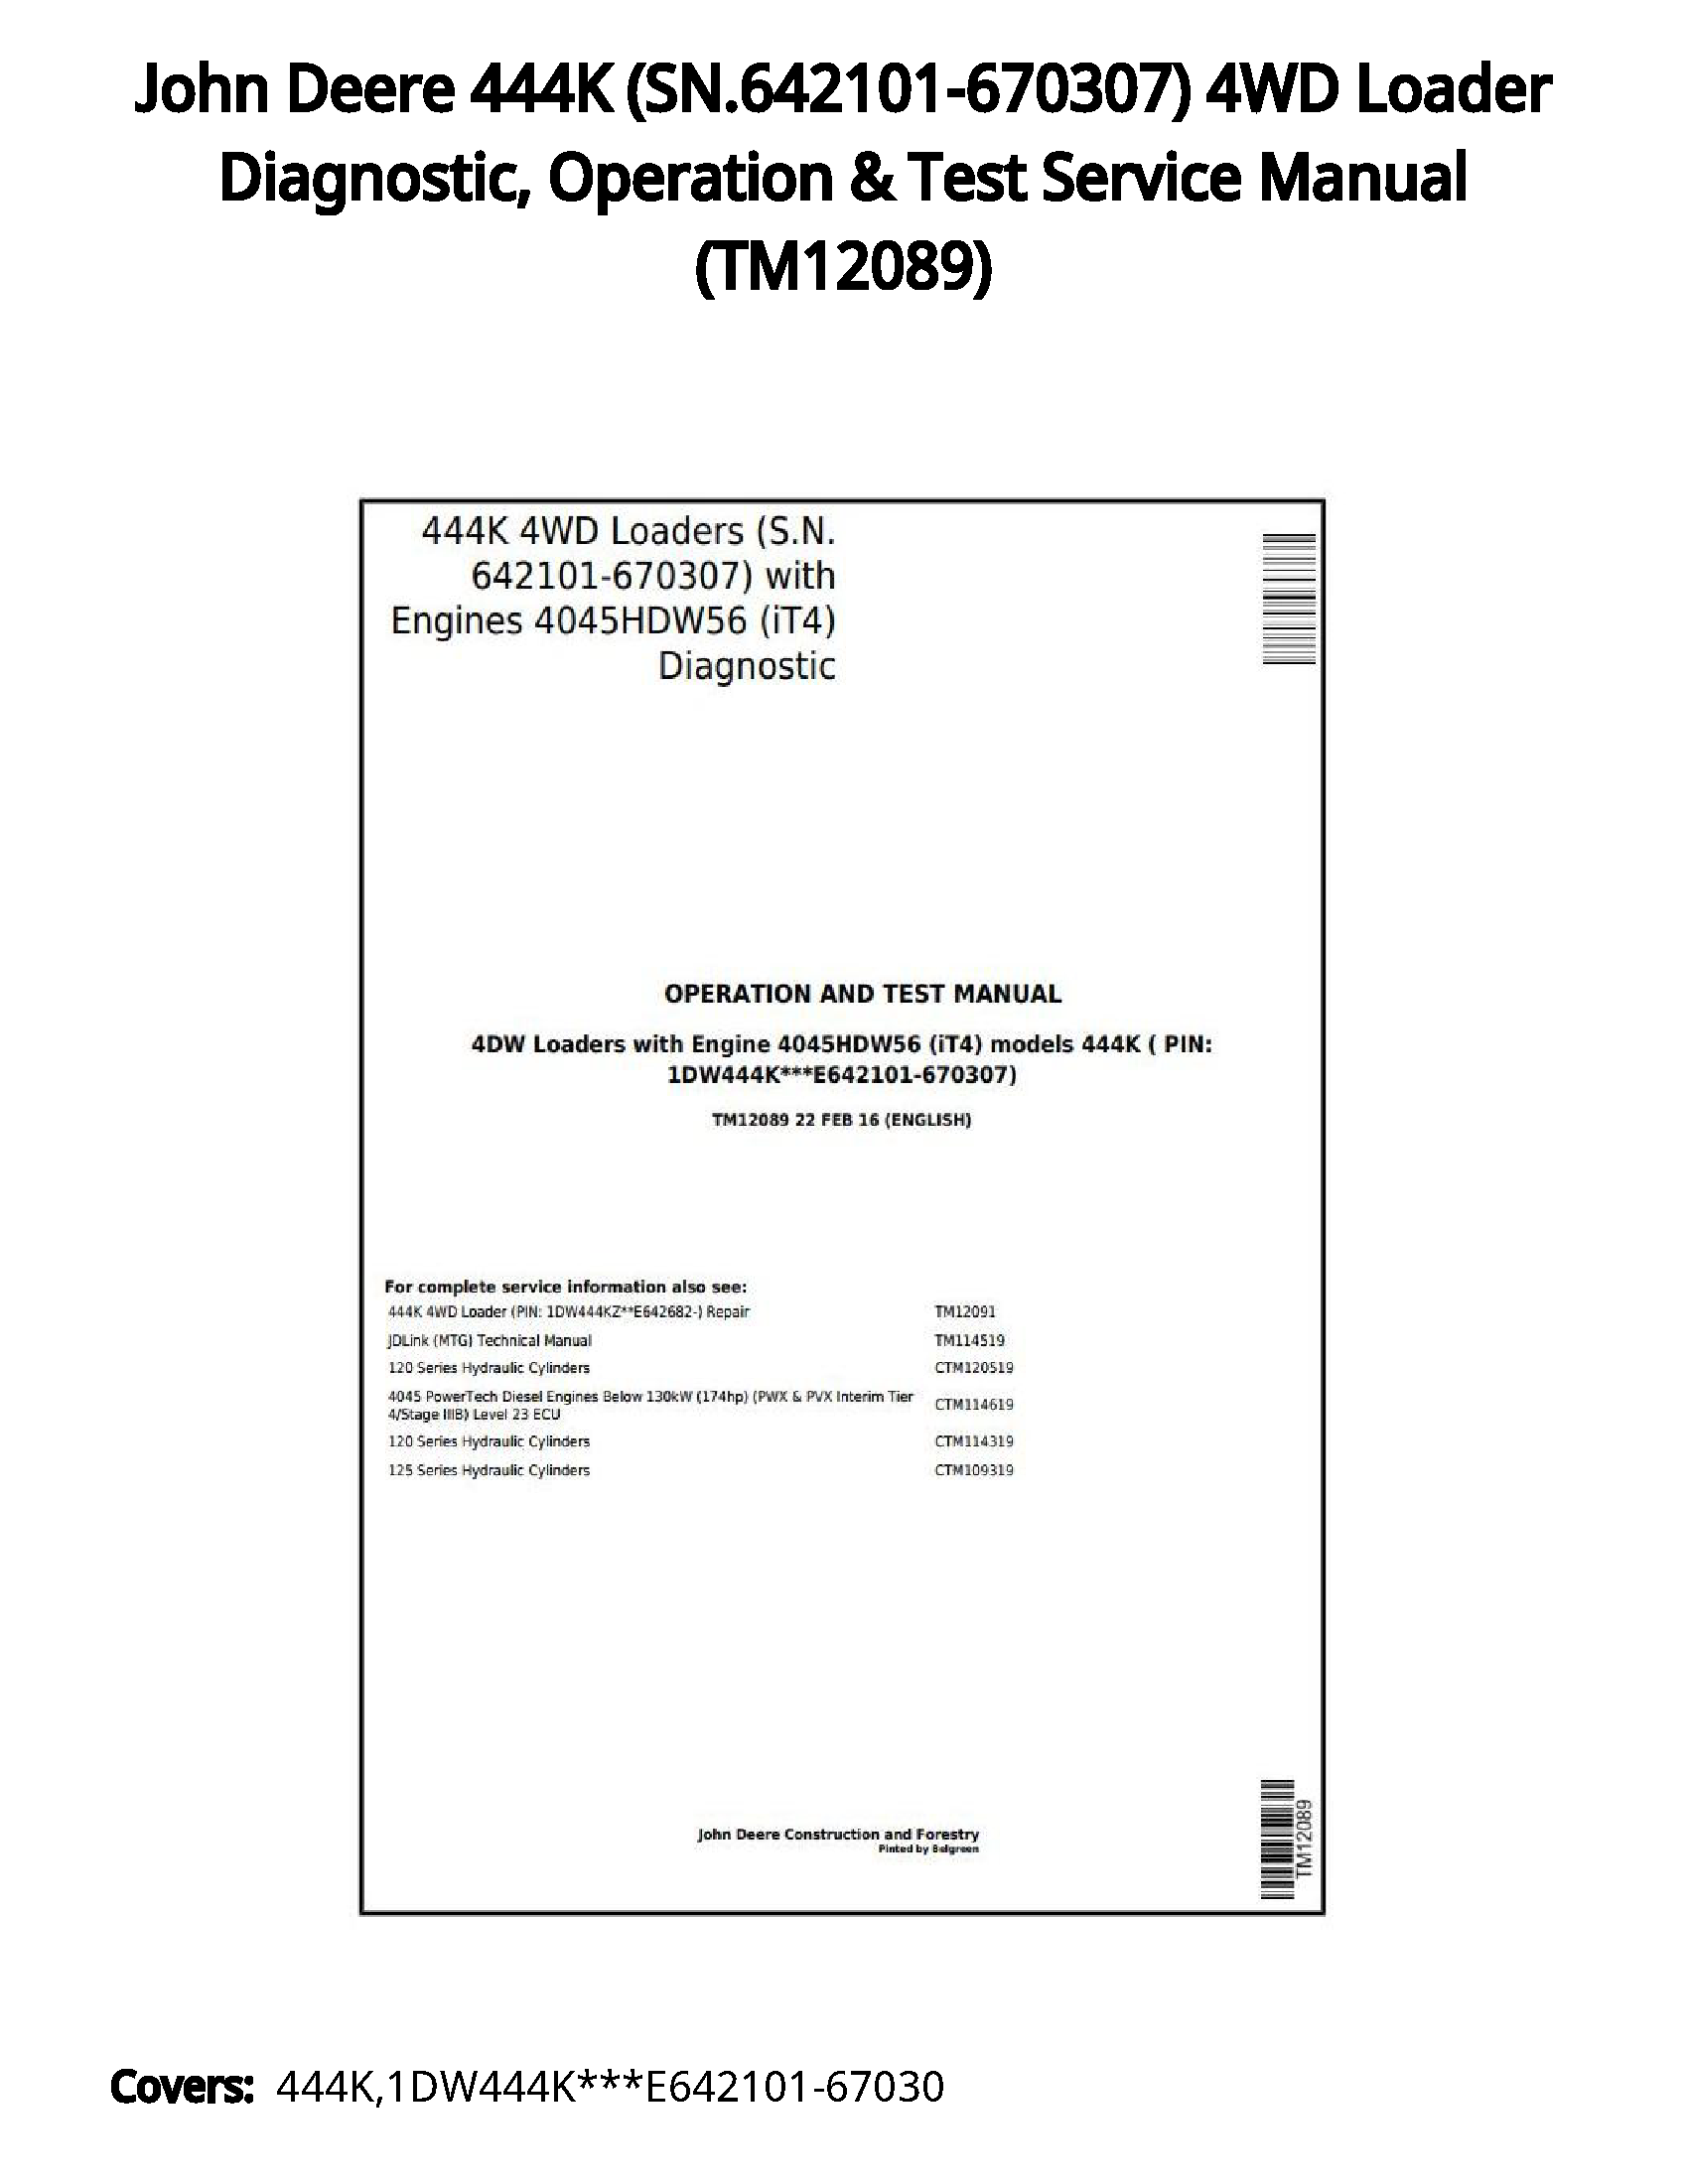 John Deere 444K (SN.642101-670307) 4WD Loader Diagnostic  Operation & Test Service Manual - TM12089